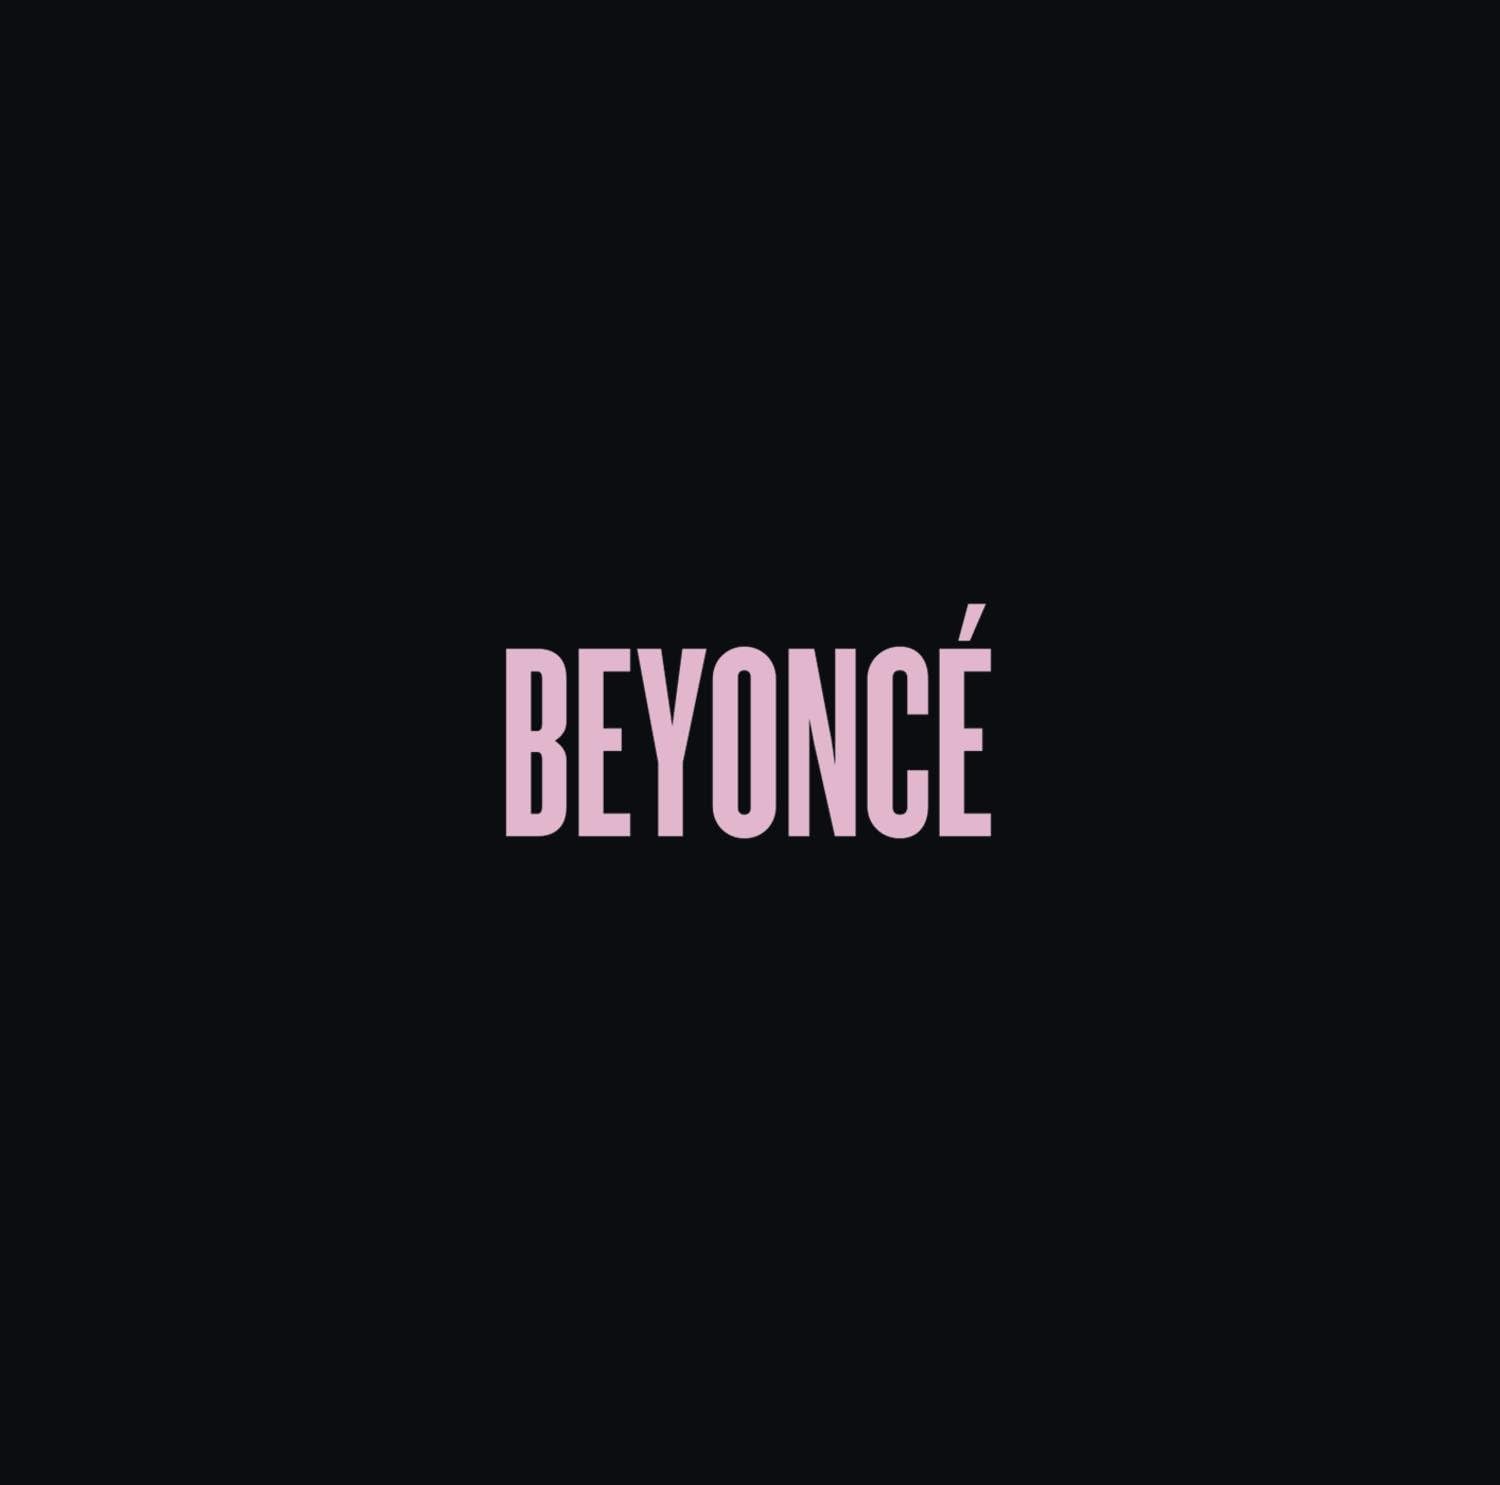 Há 10 anos Beyoncé se reinventava com seu disco auto-intitulado e transformava a indústria musical